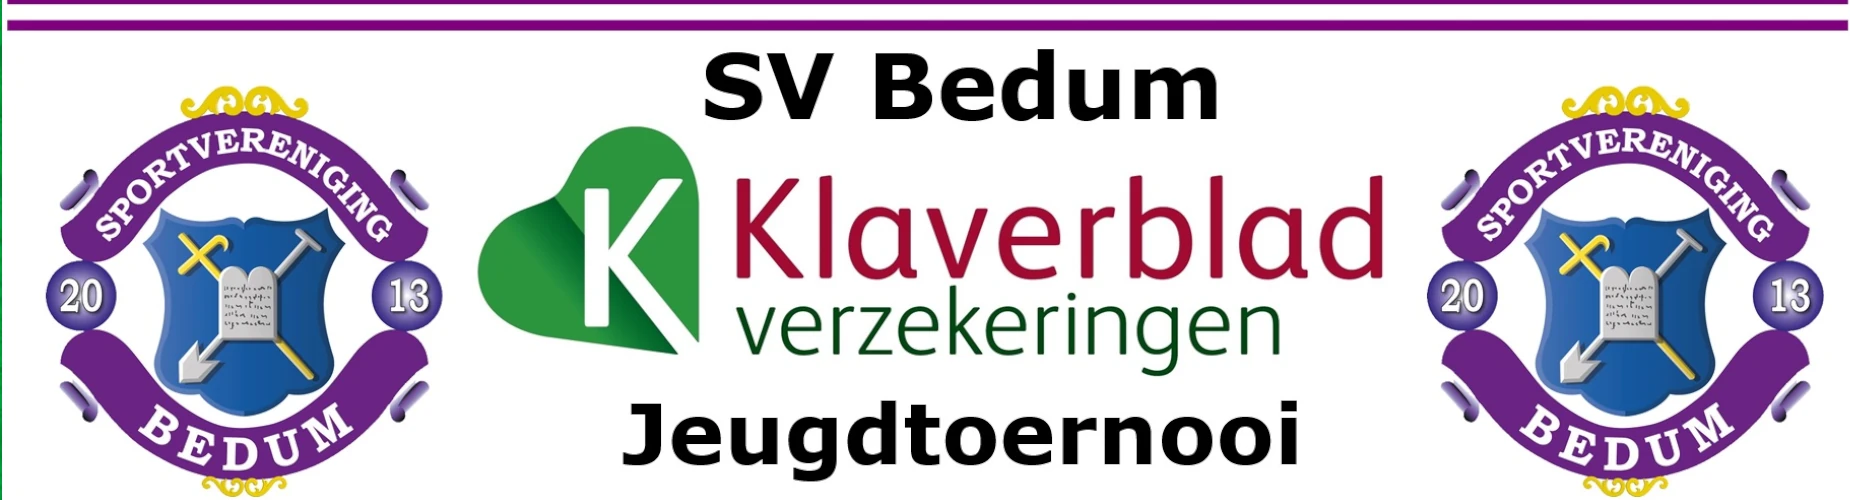 Banner - sv Bedum Klaverblad Verzekeringen Jeugdtoernooi - SV Bedum - Bedum